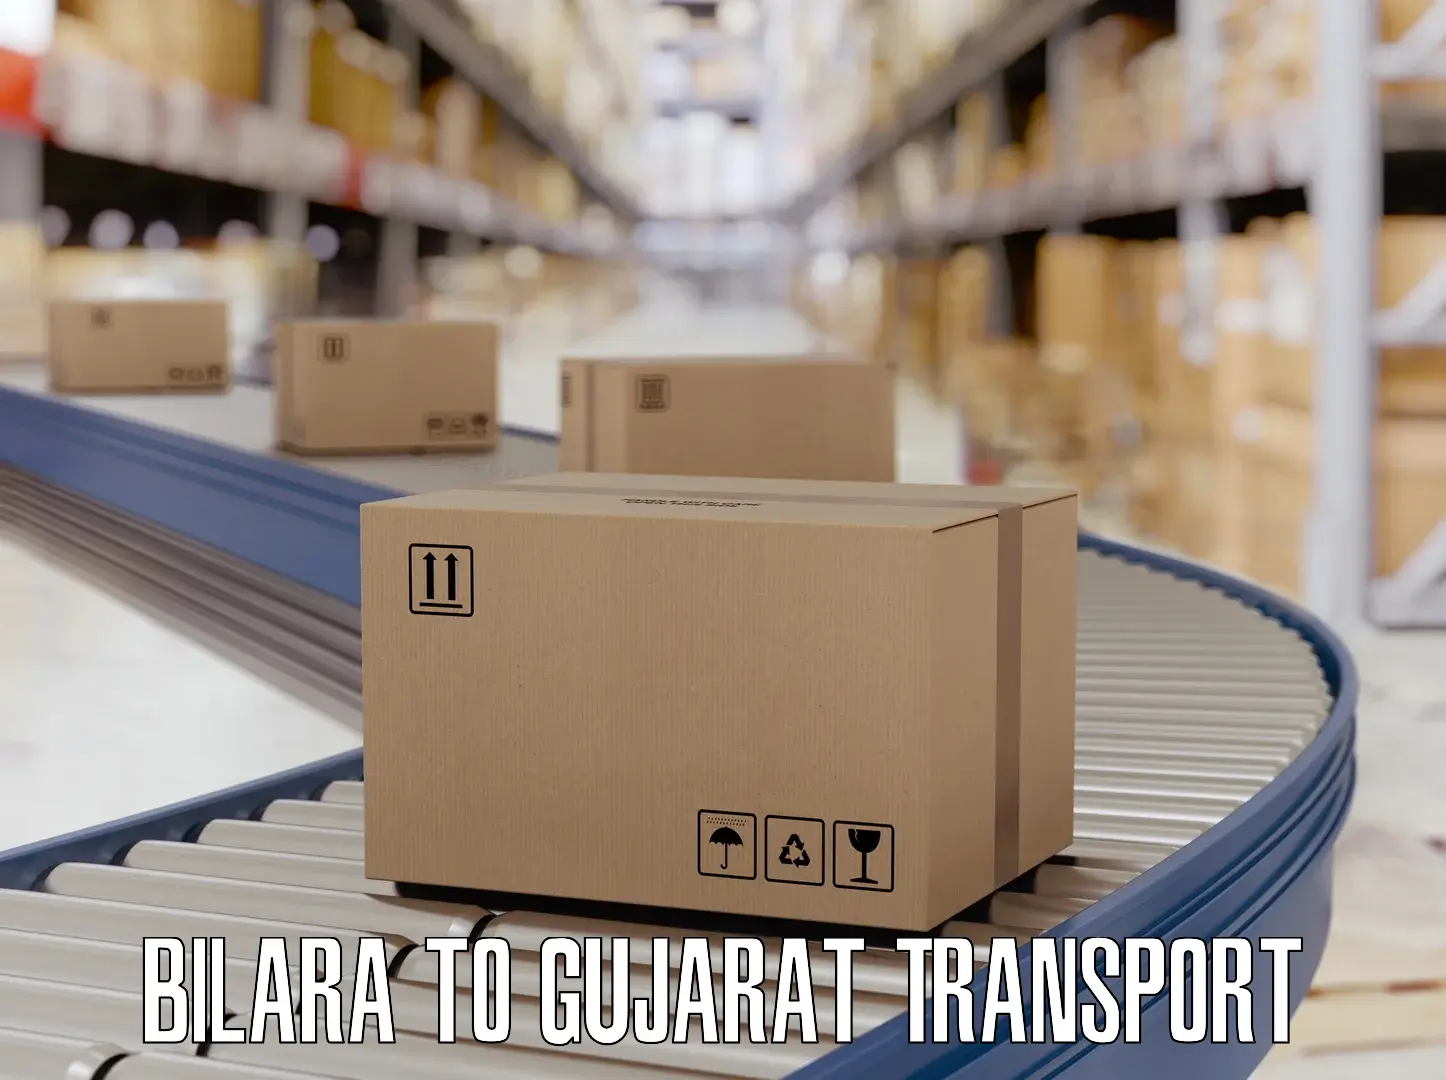 International cargo transportation services Bilara to Vagara